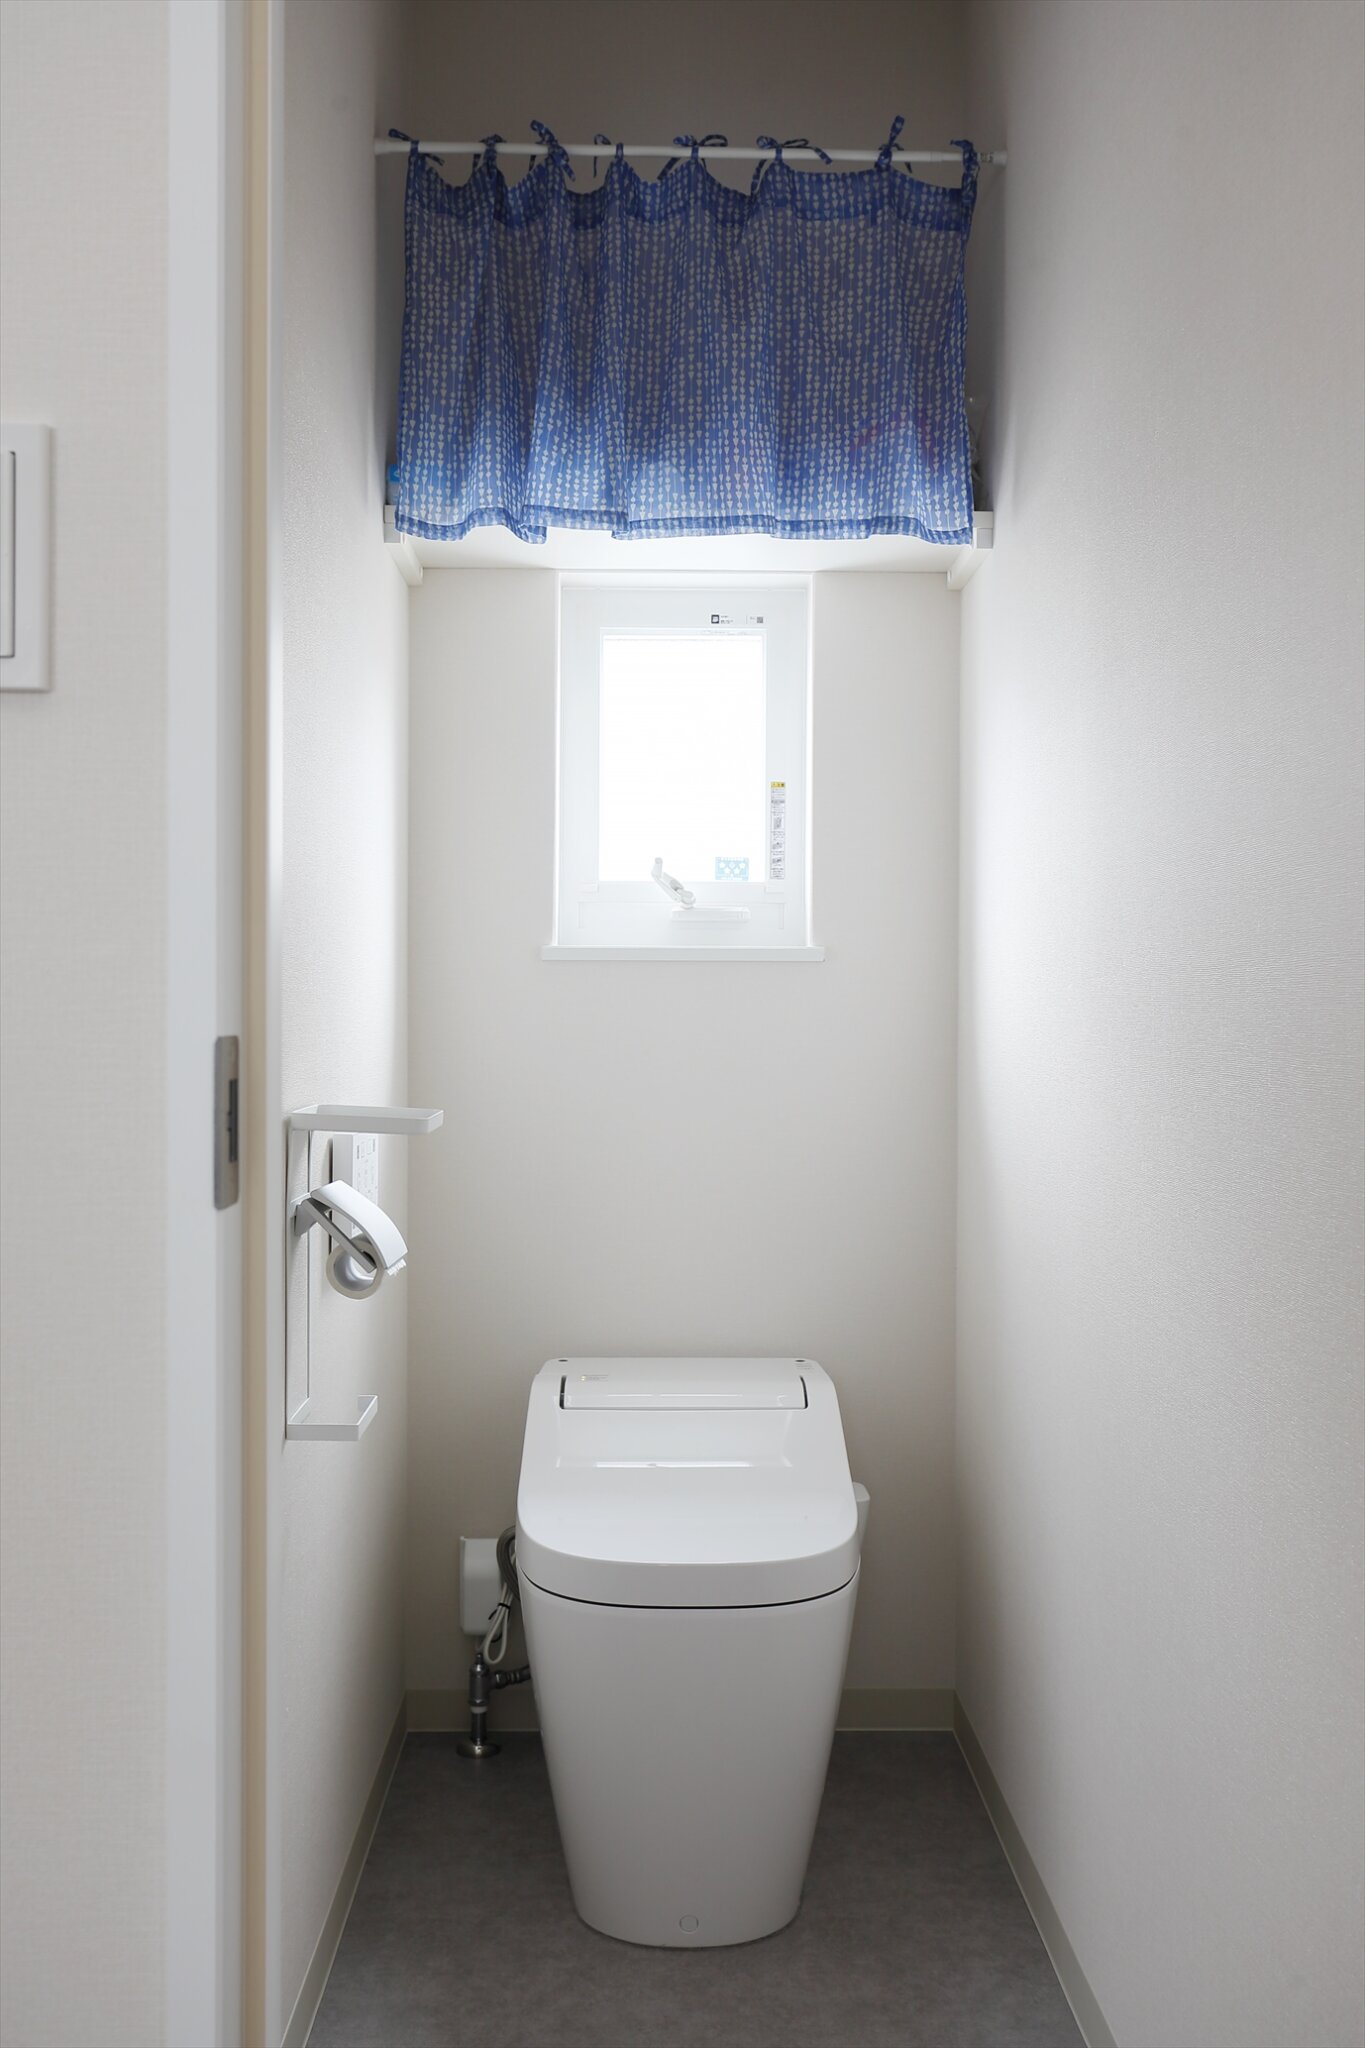 トイレの仕様について トイレ0.75畳の大きさについてなど 京都 長岡京市の壁紙提案が得意な工務店funナカムラのブログ